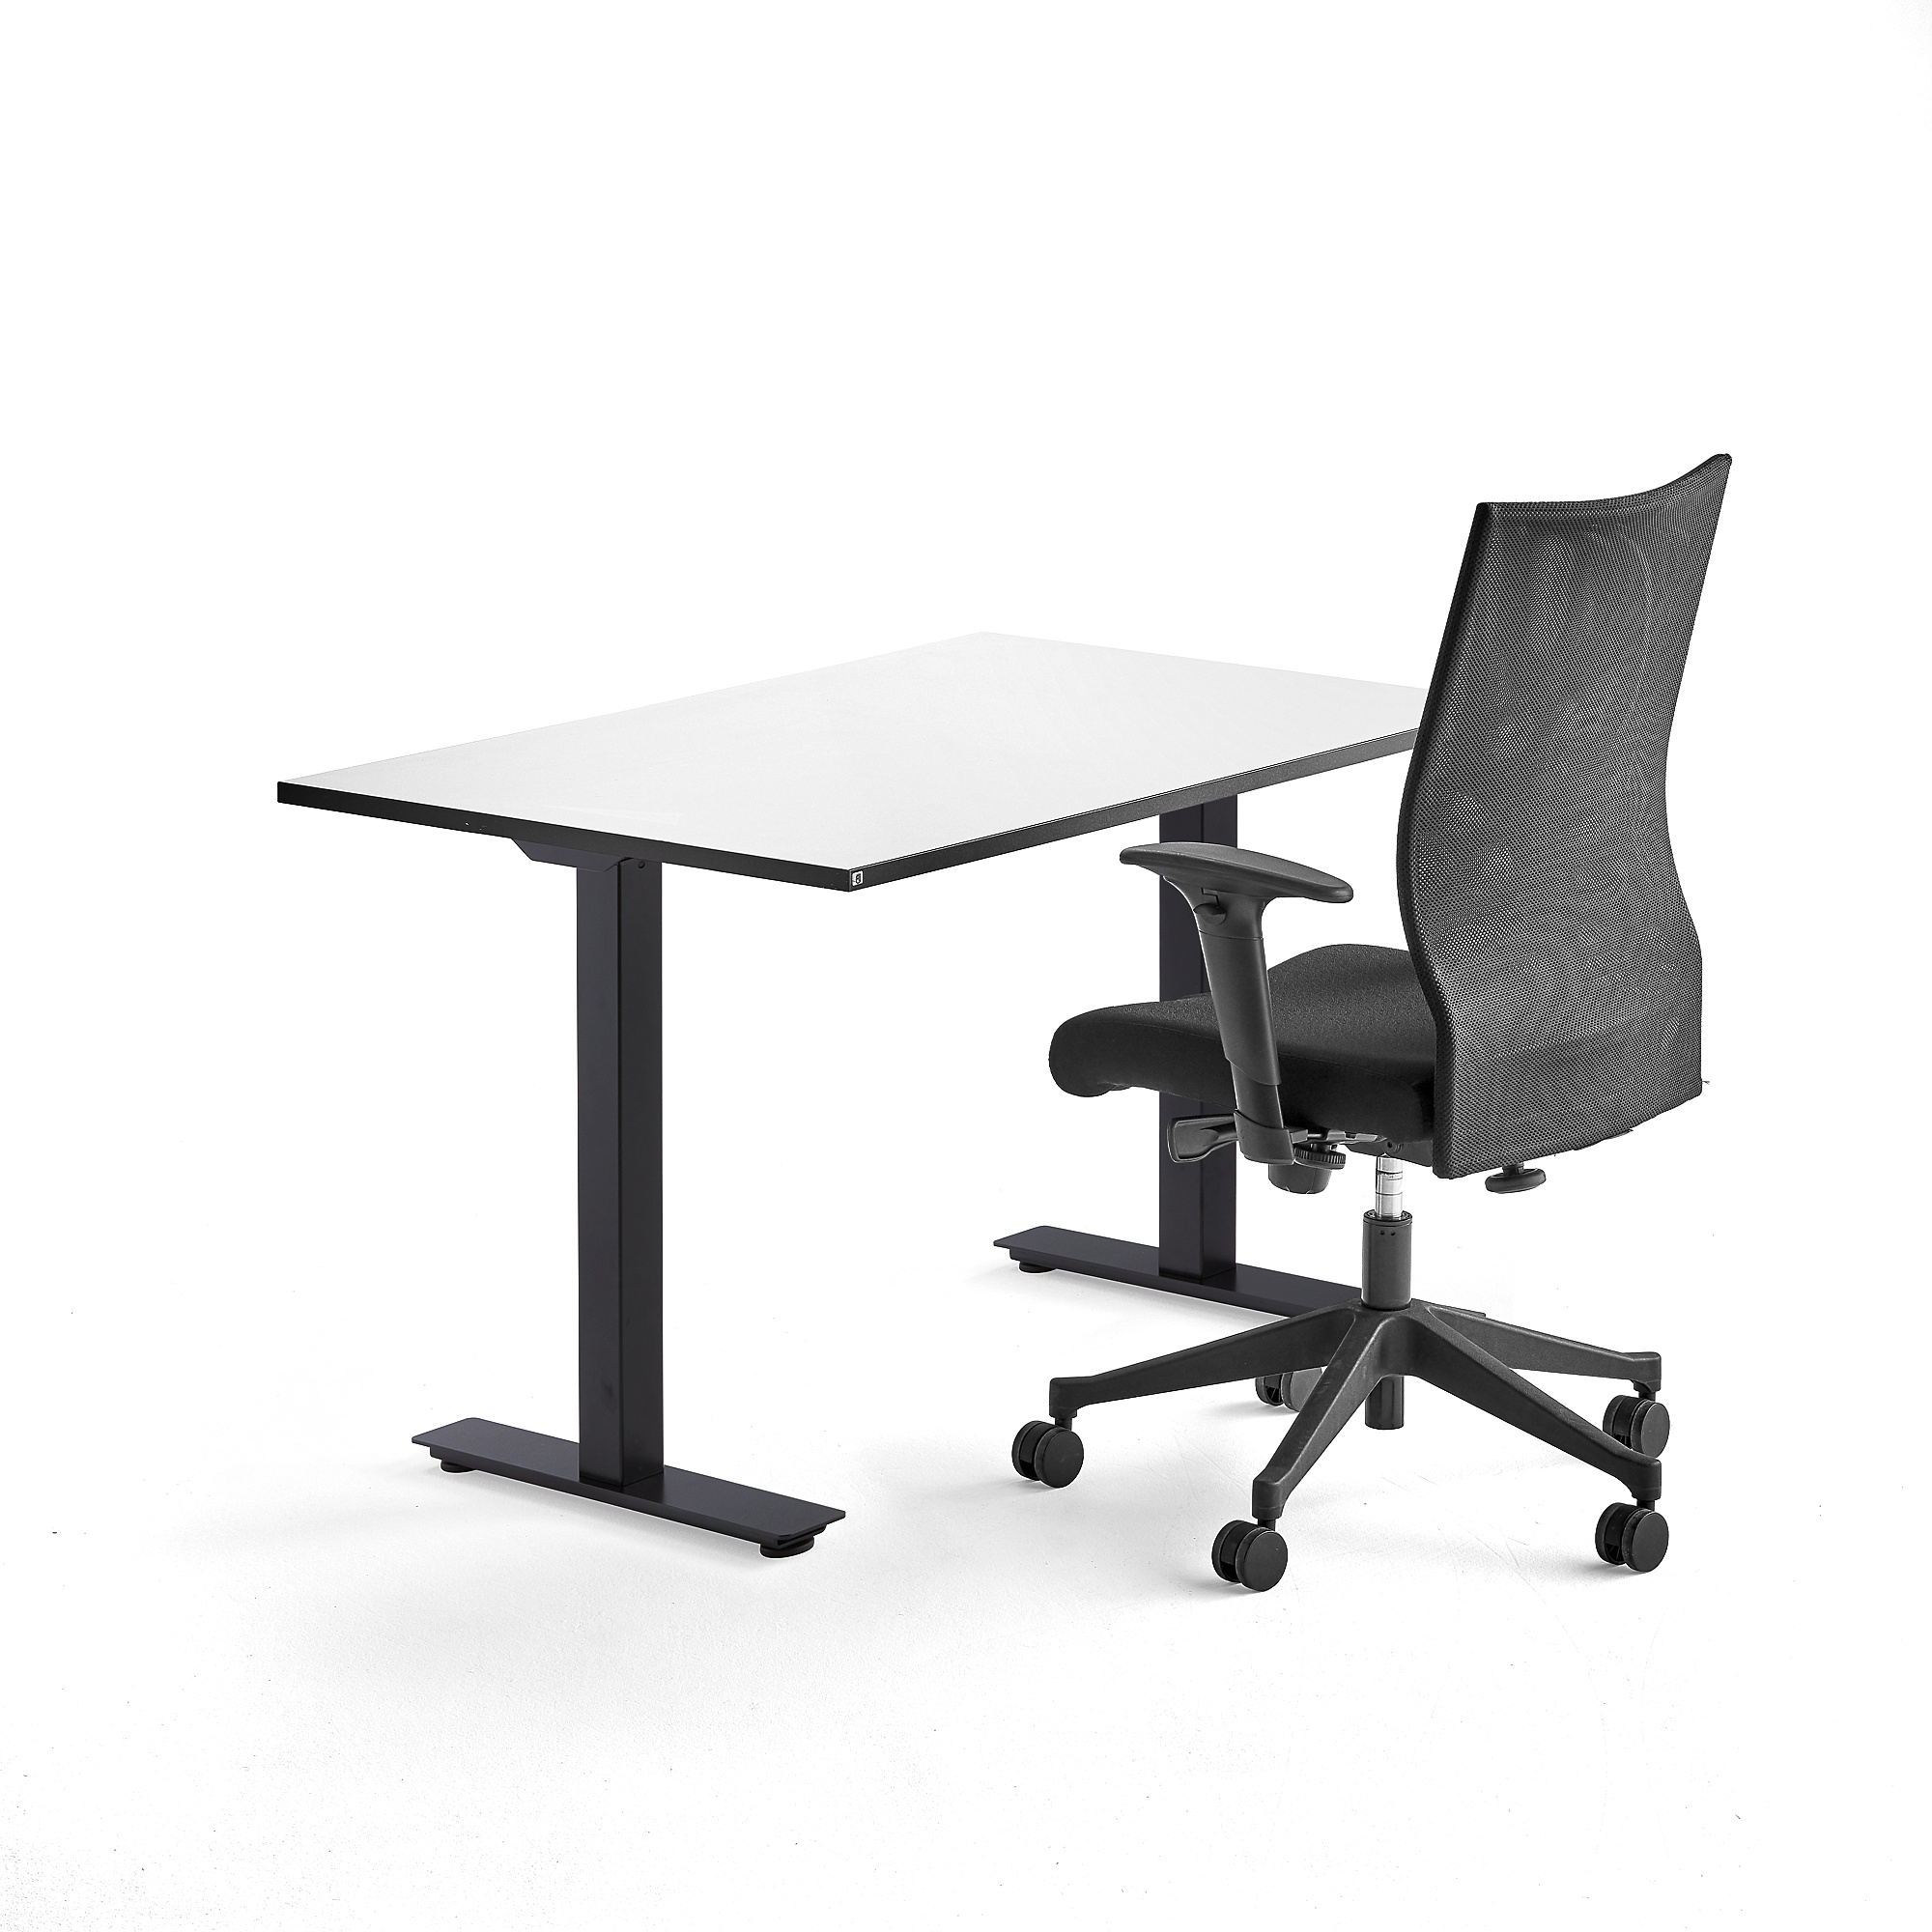 Kancelářská sestava NOMAD + MILTON, výškově nastavitelný stůl + kancelářská židle